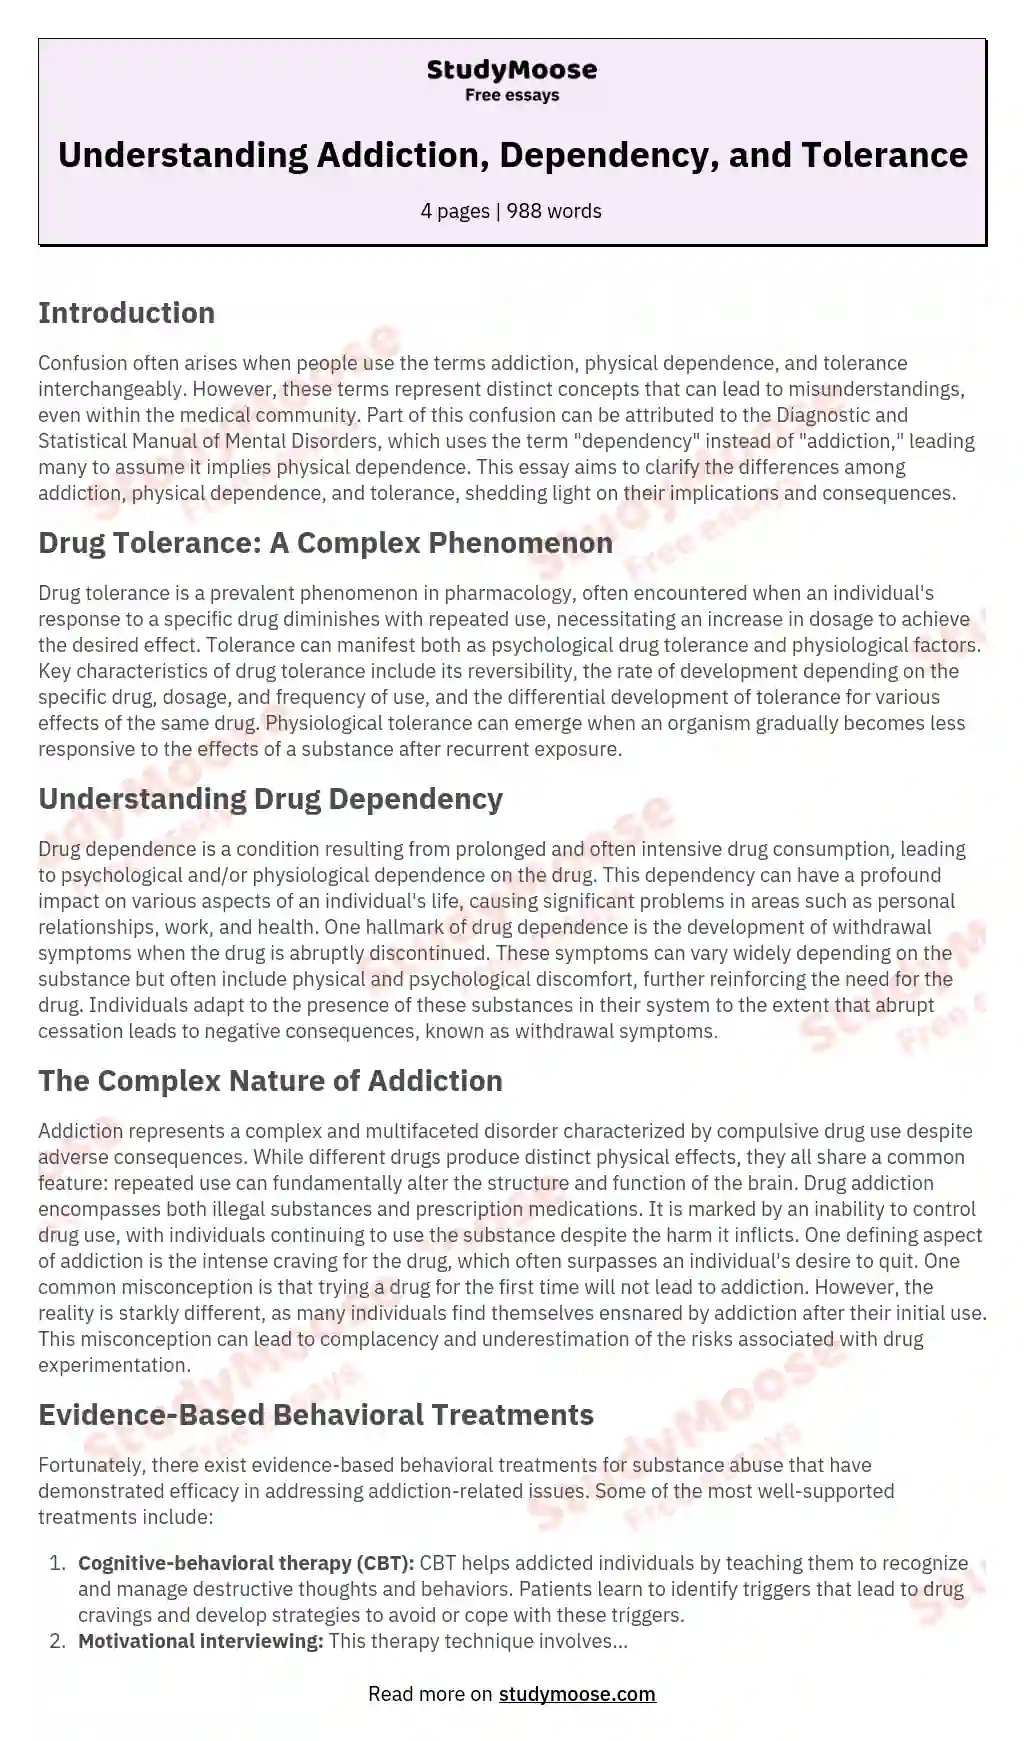 Understanding Addiction, Dependency, and Tolerance essay